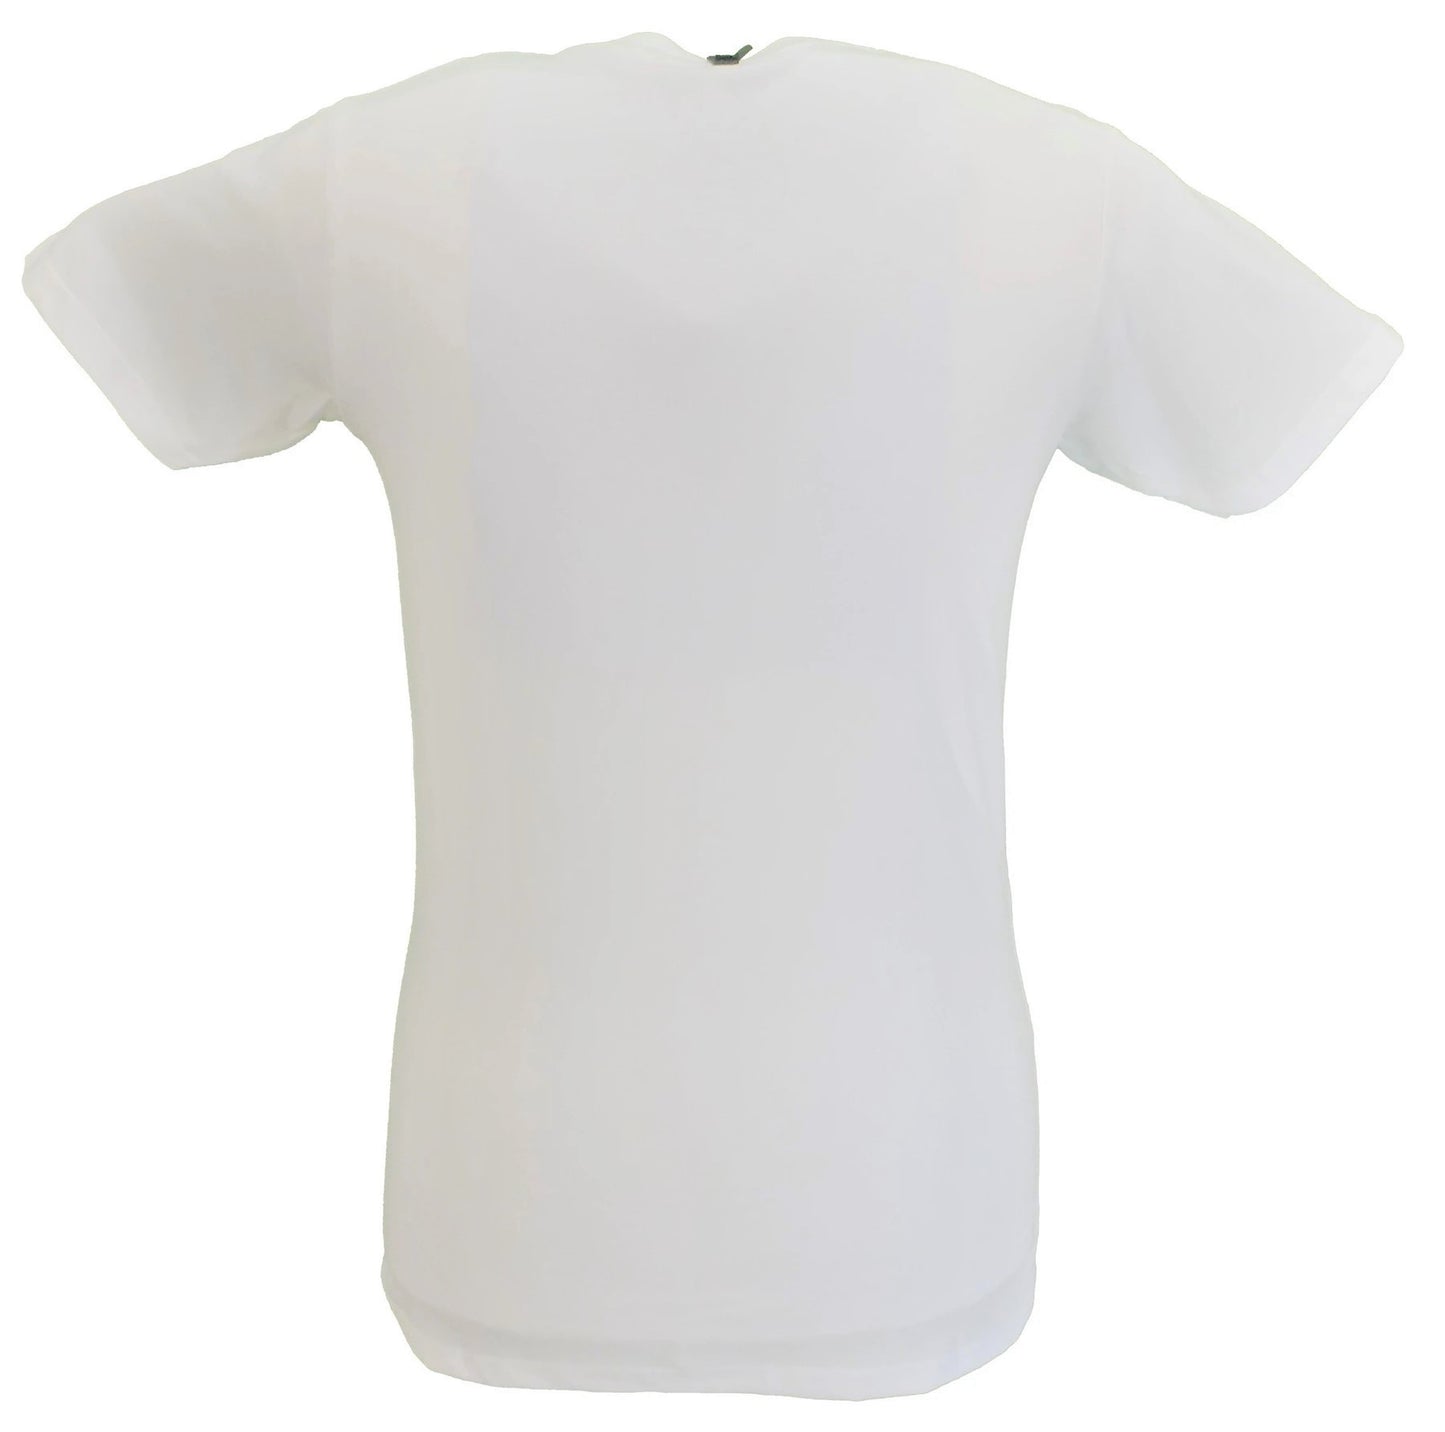 Camiseta oficial The Jam blanca para hombre.